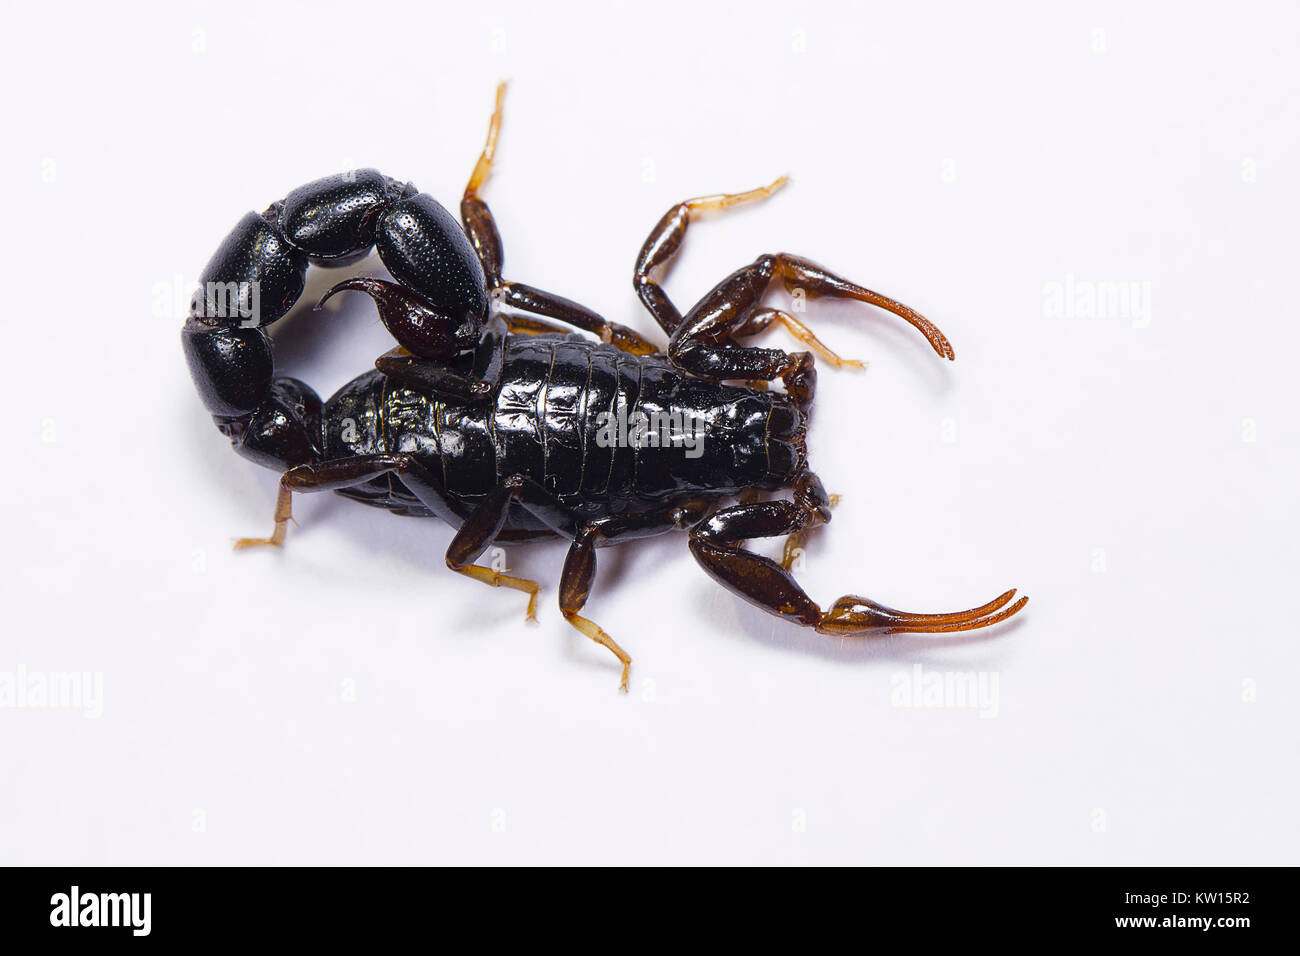 Scorpion, Orthochirus's sp. Tamilnadu, India. Stock Photo